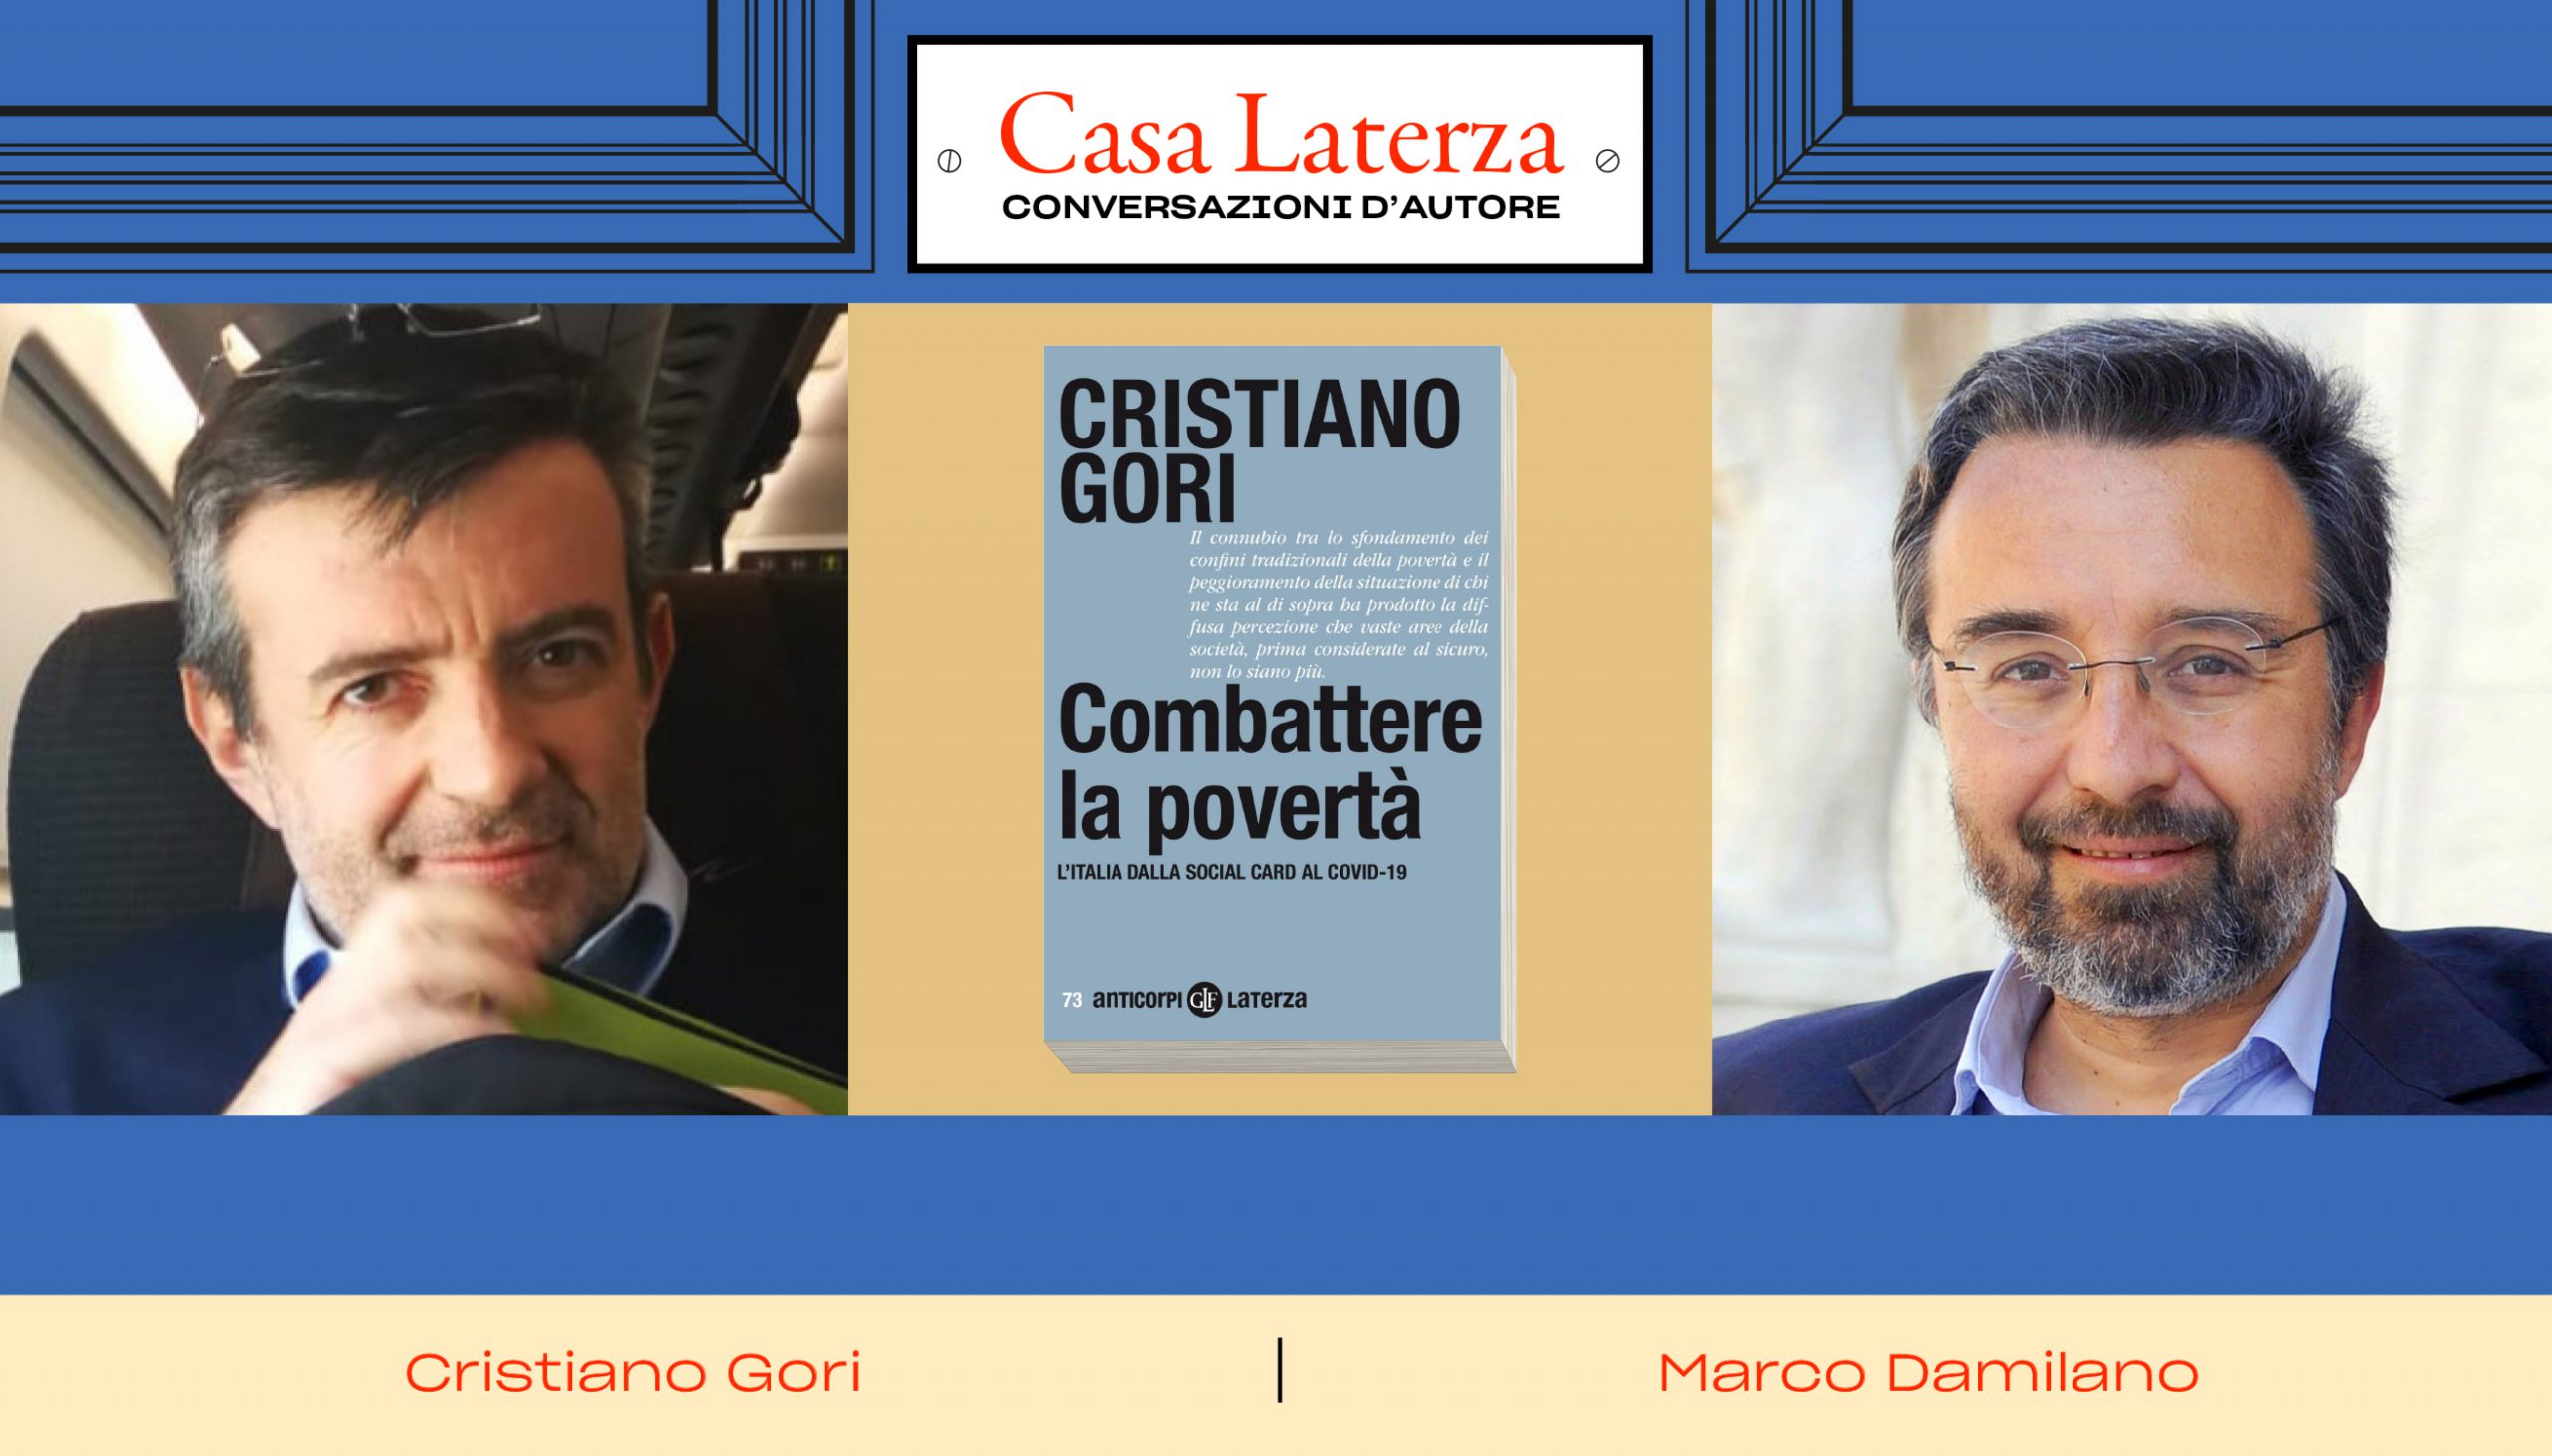 #CasaLaterza: Cristiano Gori e la lotta alla povertà